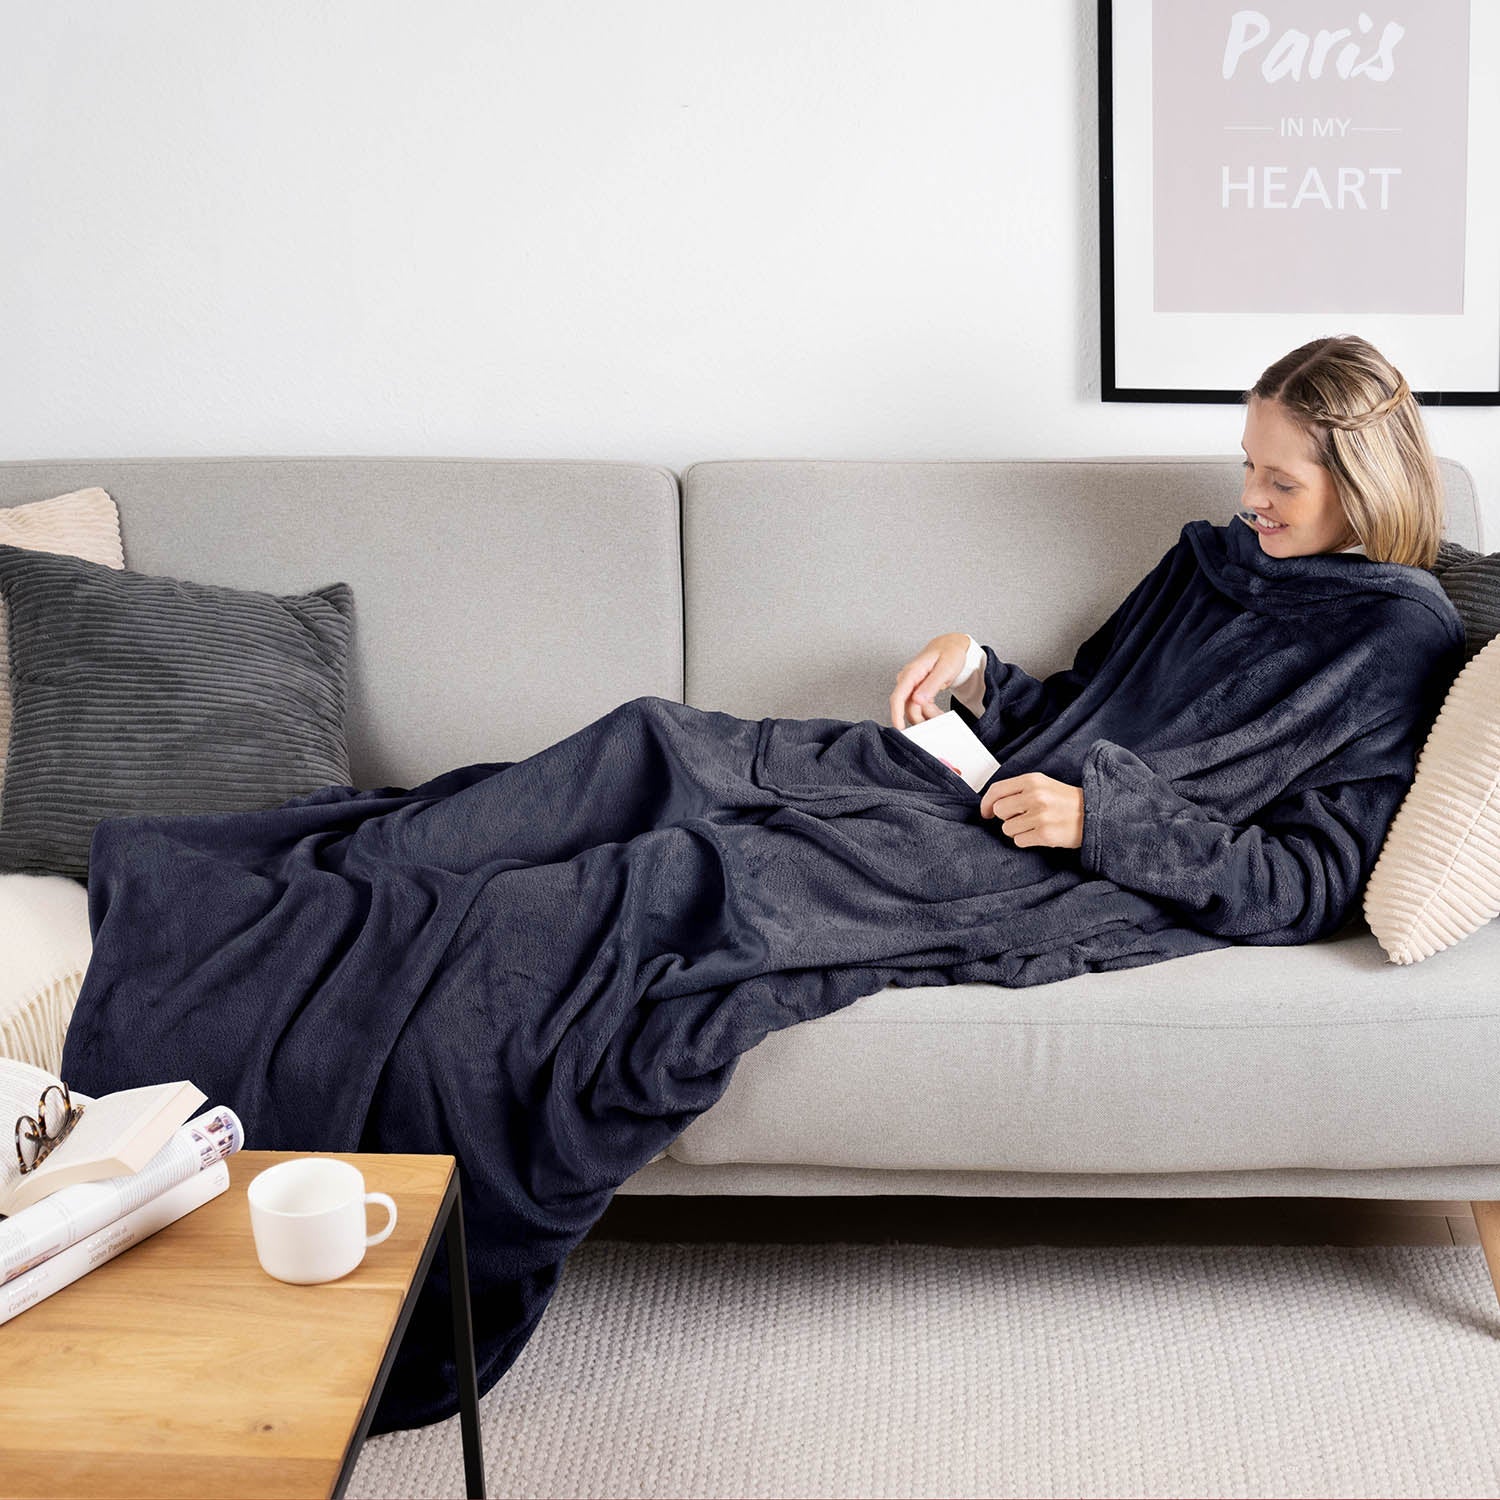 Frau liegt auf einem grauen Sofa eingehüllt in ein dunkelblau flauschiges Kleidungsstück und liest ein Buch mit einer Tasse auf einem Holztisch daneben.